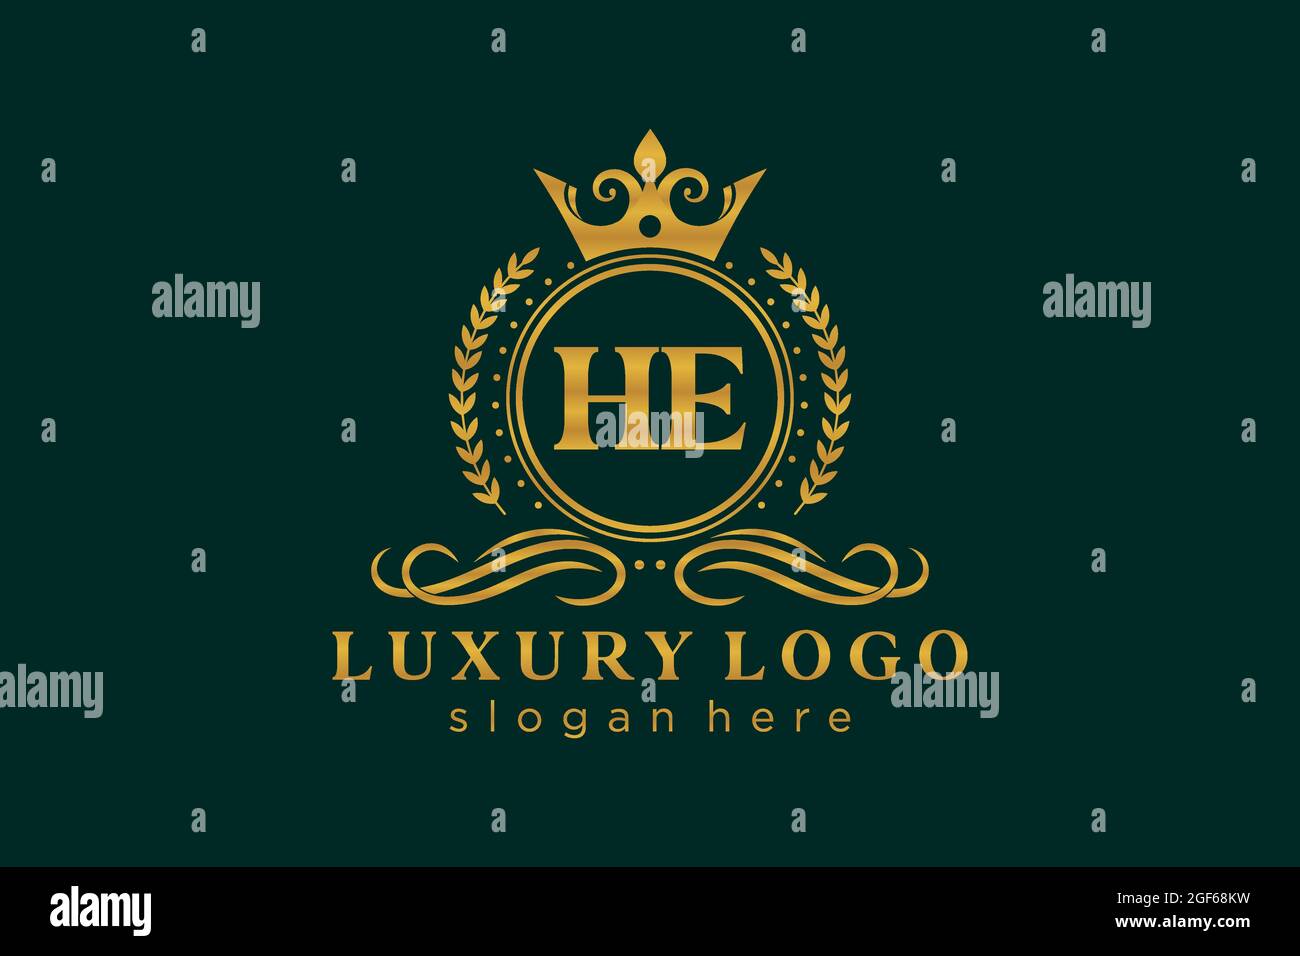 He Carta Real de lujo Logo plantilla en el arte vectorial para Restaurante, Royalty, Boutique, Café, Hotel, Heráldica, joyería, moda y otros vectores illustrr Ilustración del Vector